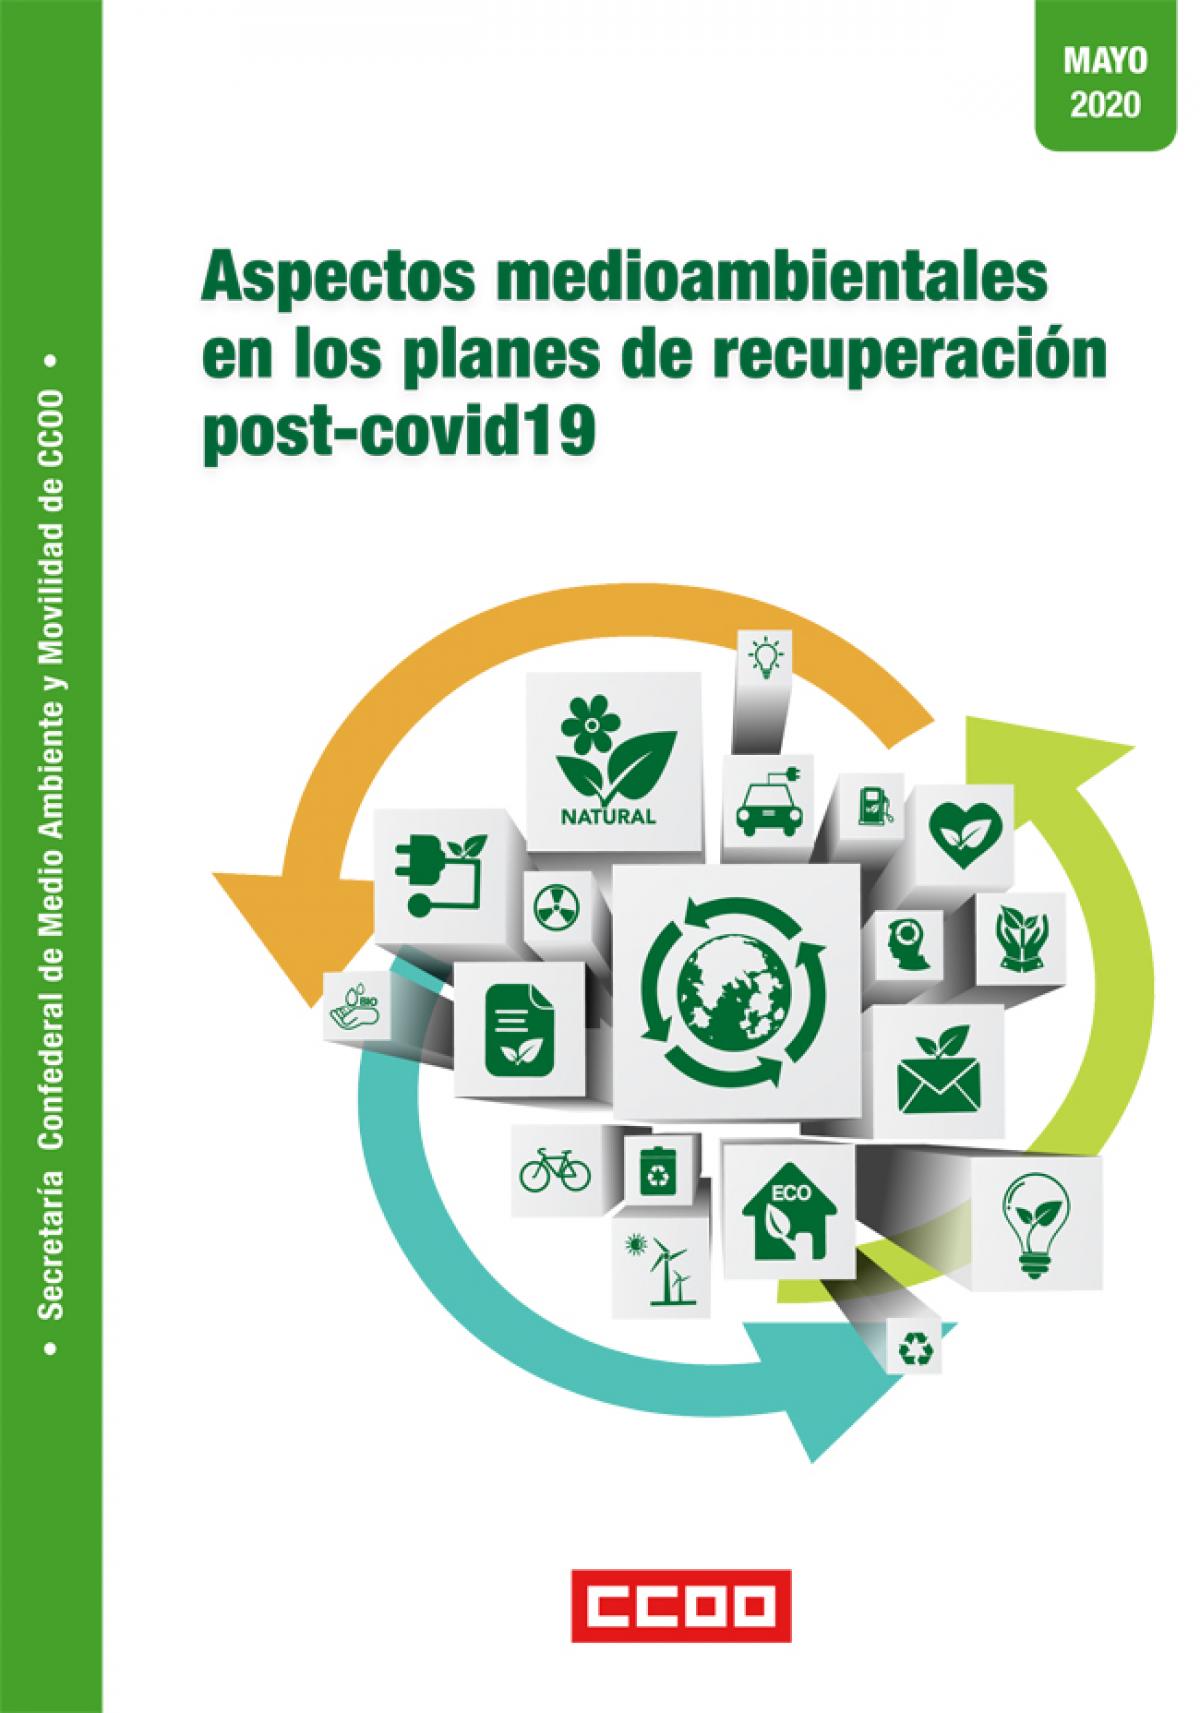 Aspectos medioambientales en los planes de recuperación post-covid19